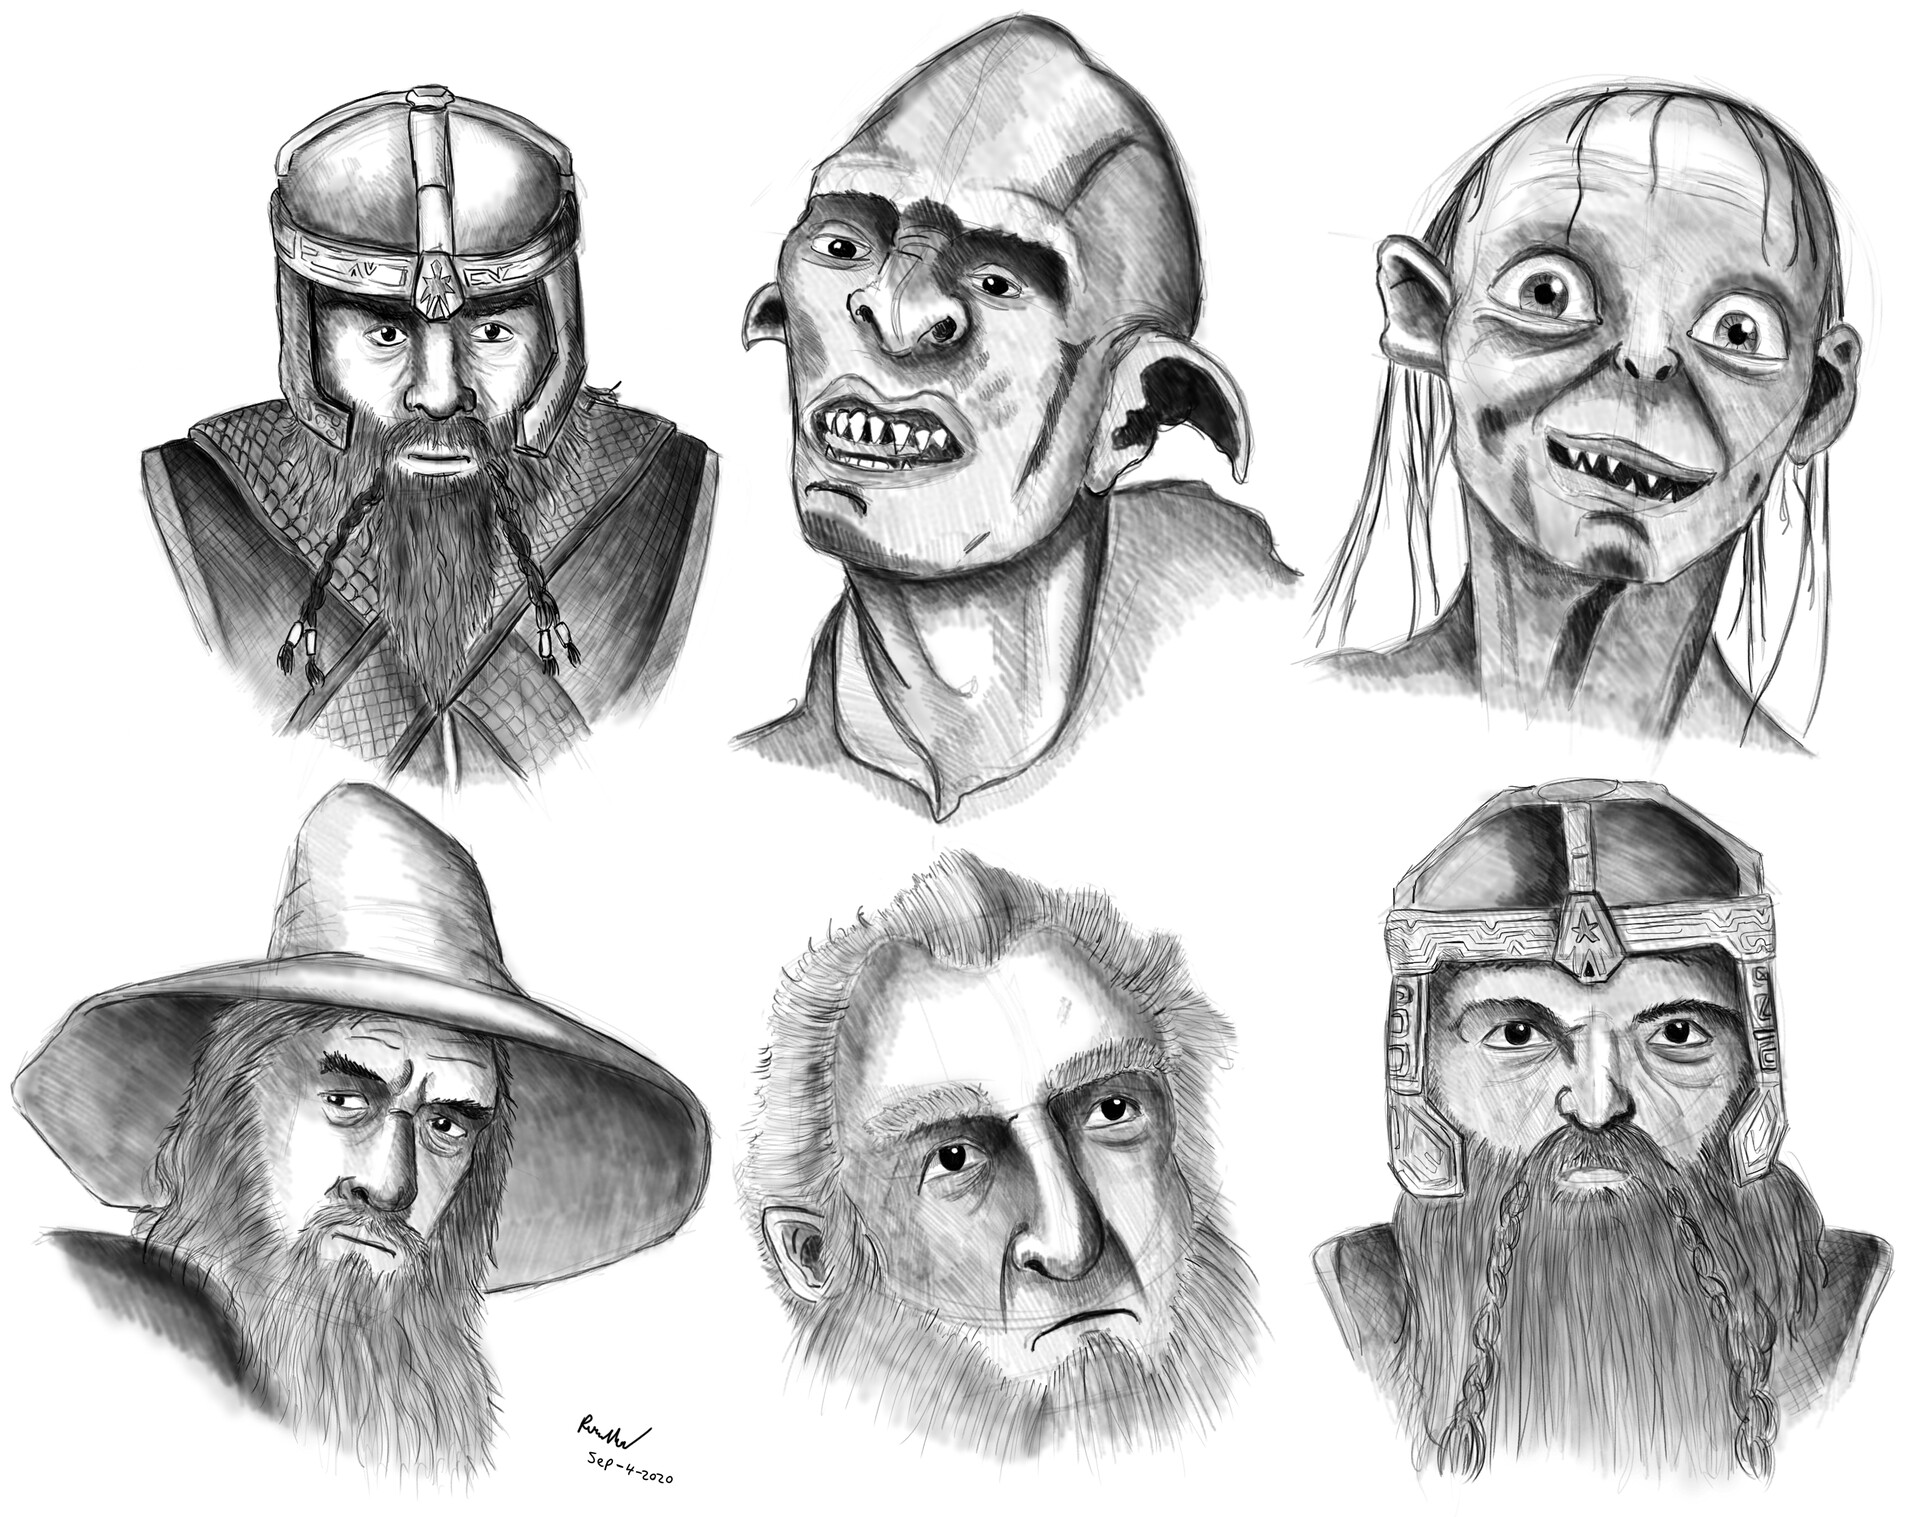 ArtStation - Sketching Lord Of The Rings characters in Krita (Timelapse)